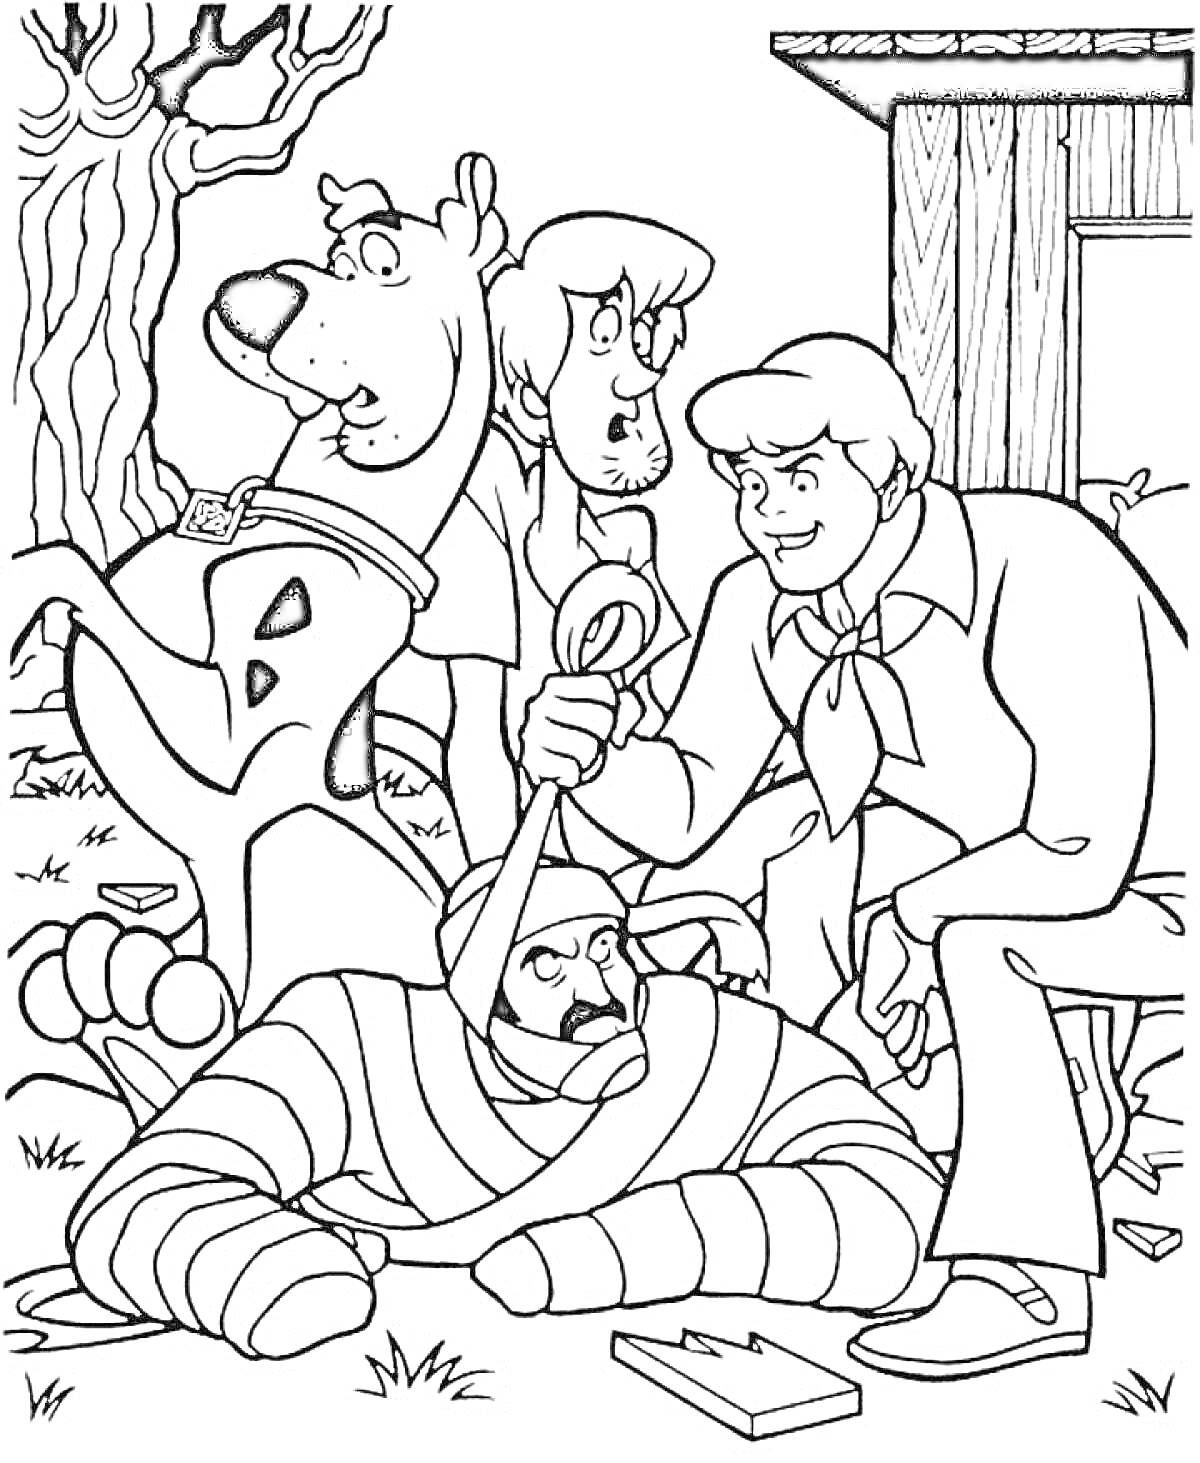 Раскраска Скуби Ду и его друзья раскрывают очередное дело, в процессе захвата мумии